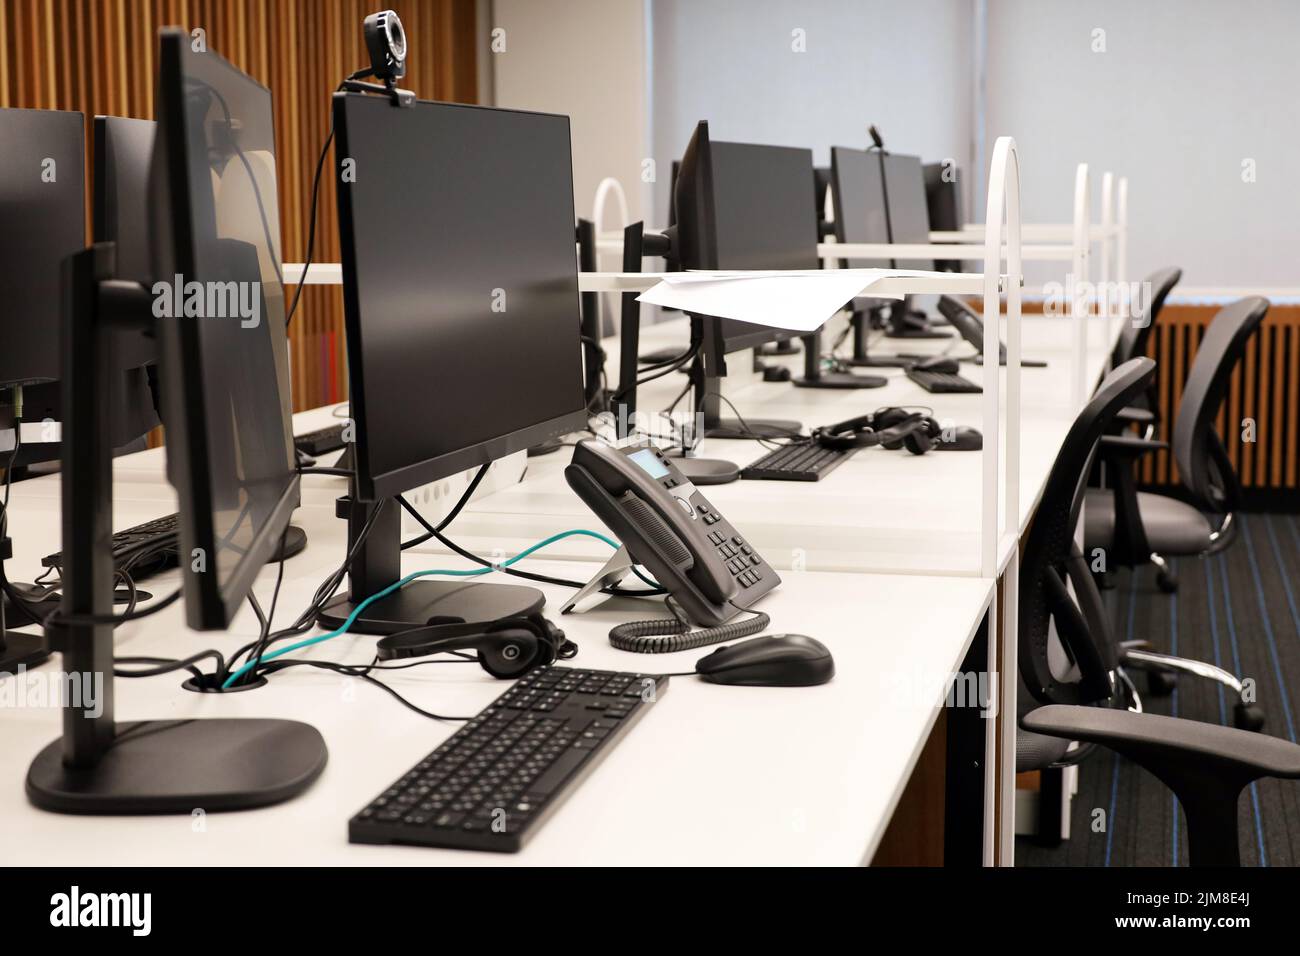 Bürofläche mit PC-Monitoren, Telefonen und Headsets auf den Tischen. Coworking-Bereich, leeres Call Center, Firmengeschäft Stockfoto